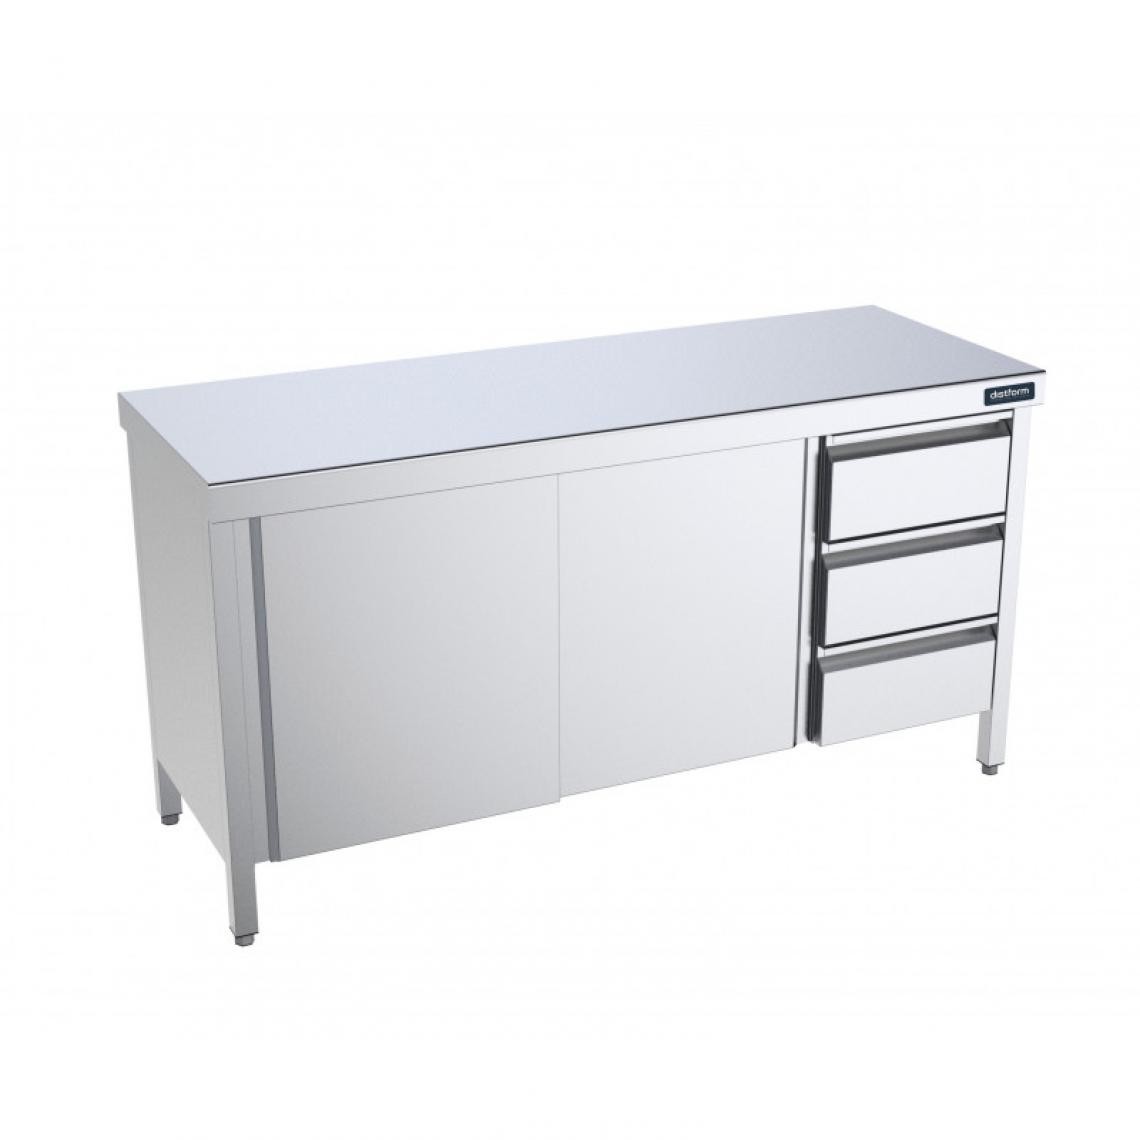 DISTFORM - Table Inox centrale avec portes coulissantes et tiroirs à droite - Gamme 600 - Distform - Acier inoxydable2200x600 - Tables à manger